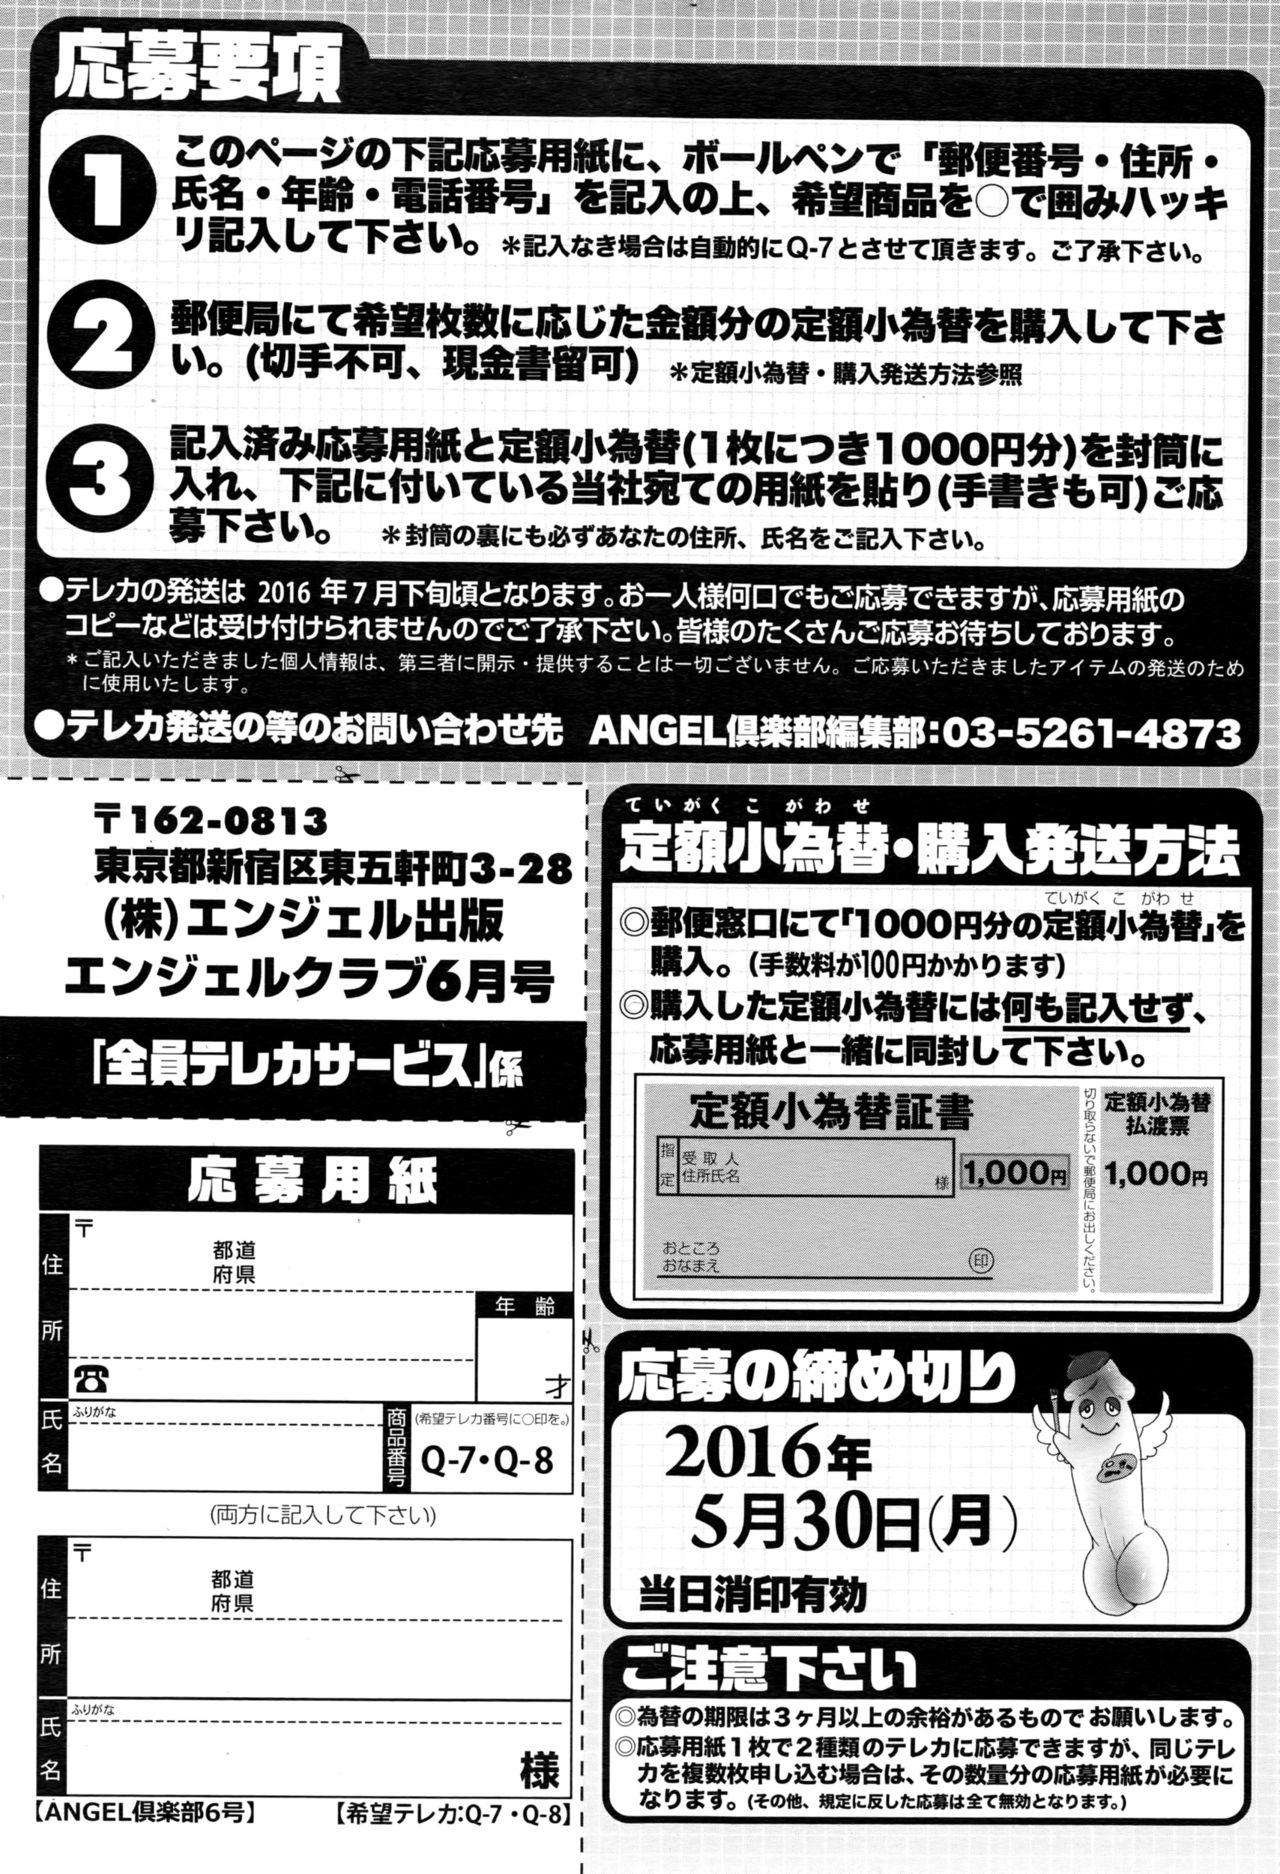 ANGEL Club 2016-06 207